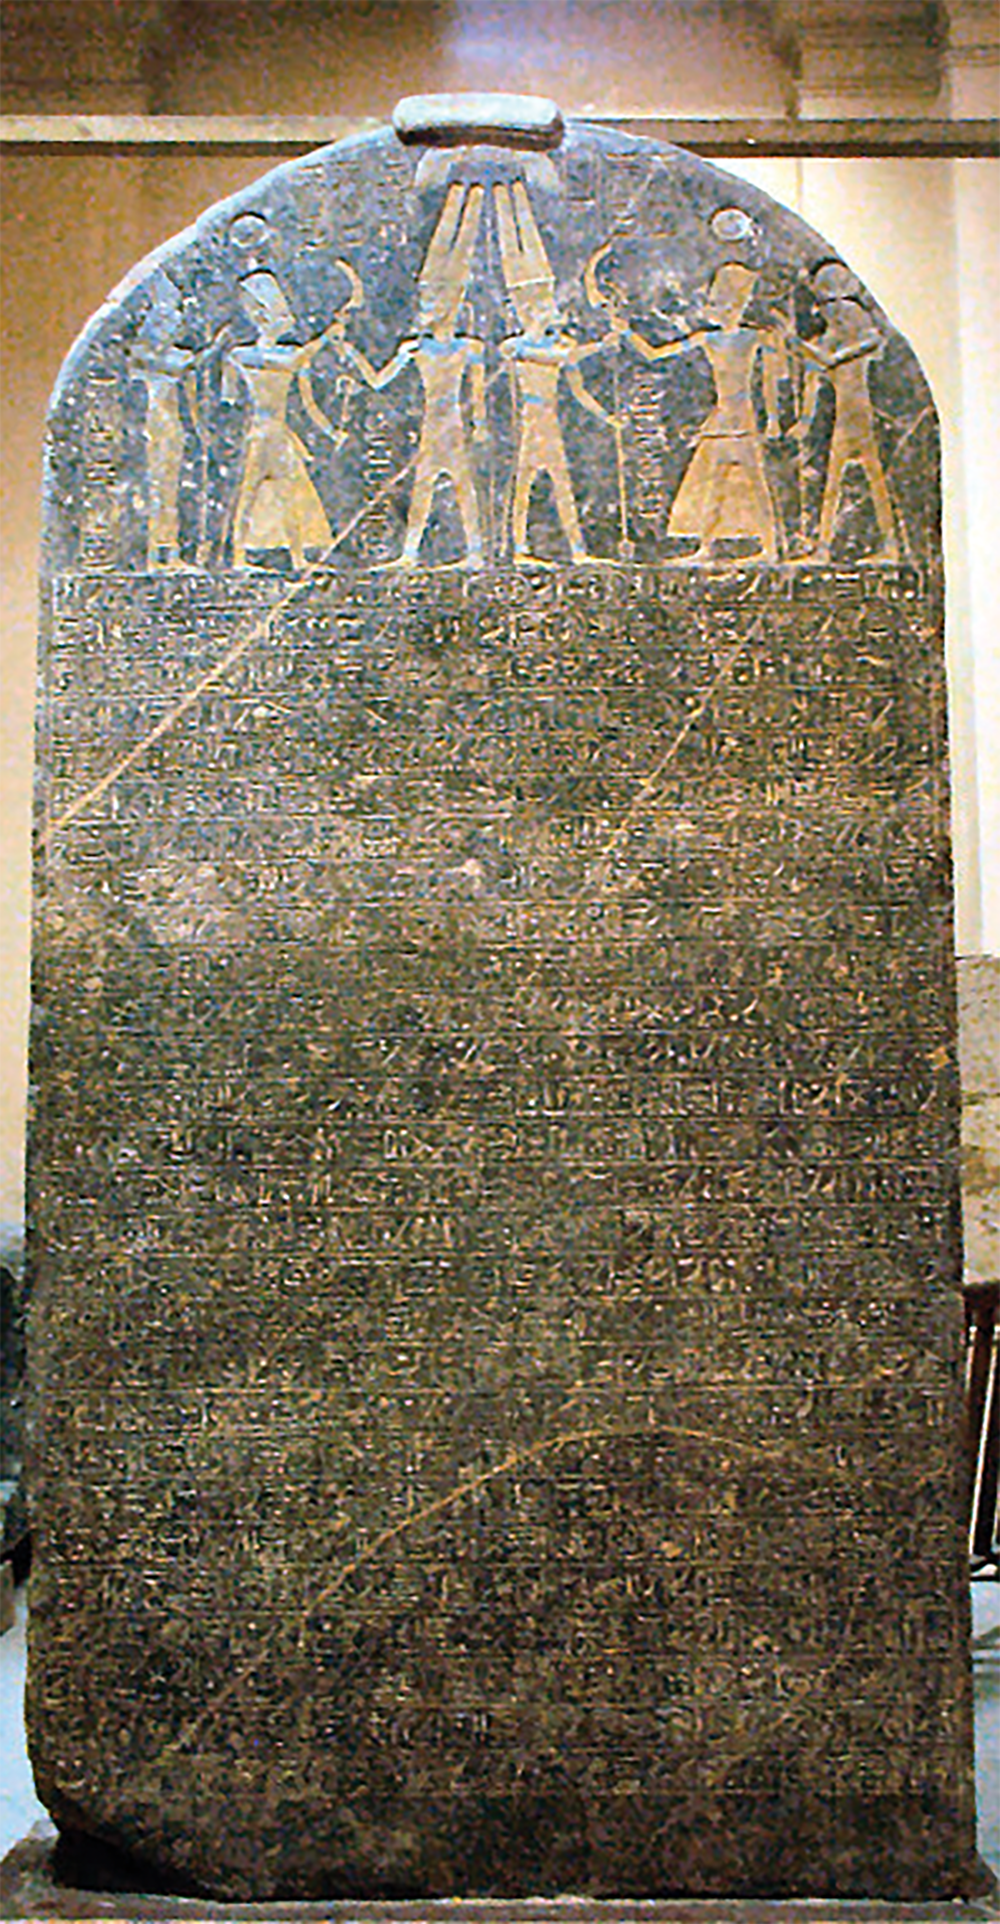 The Merneptah Stele